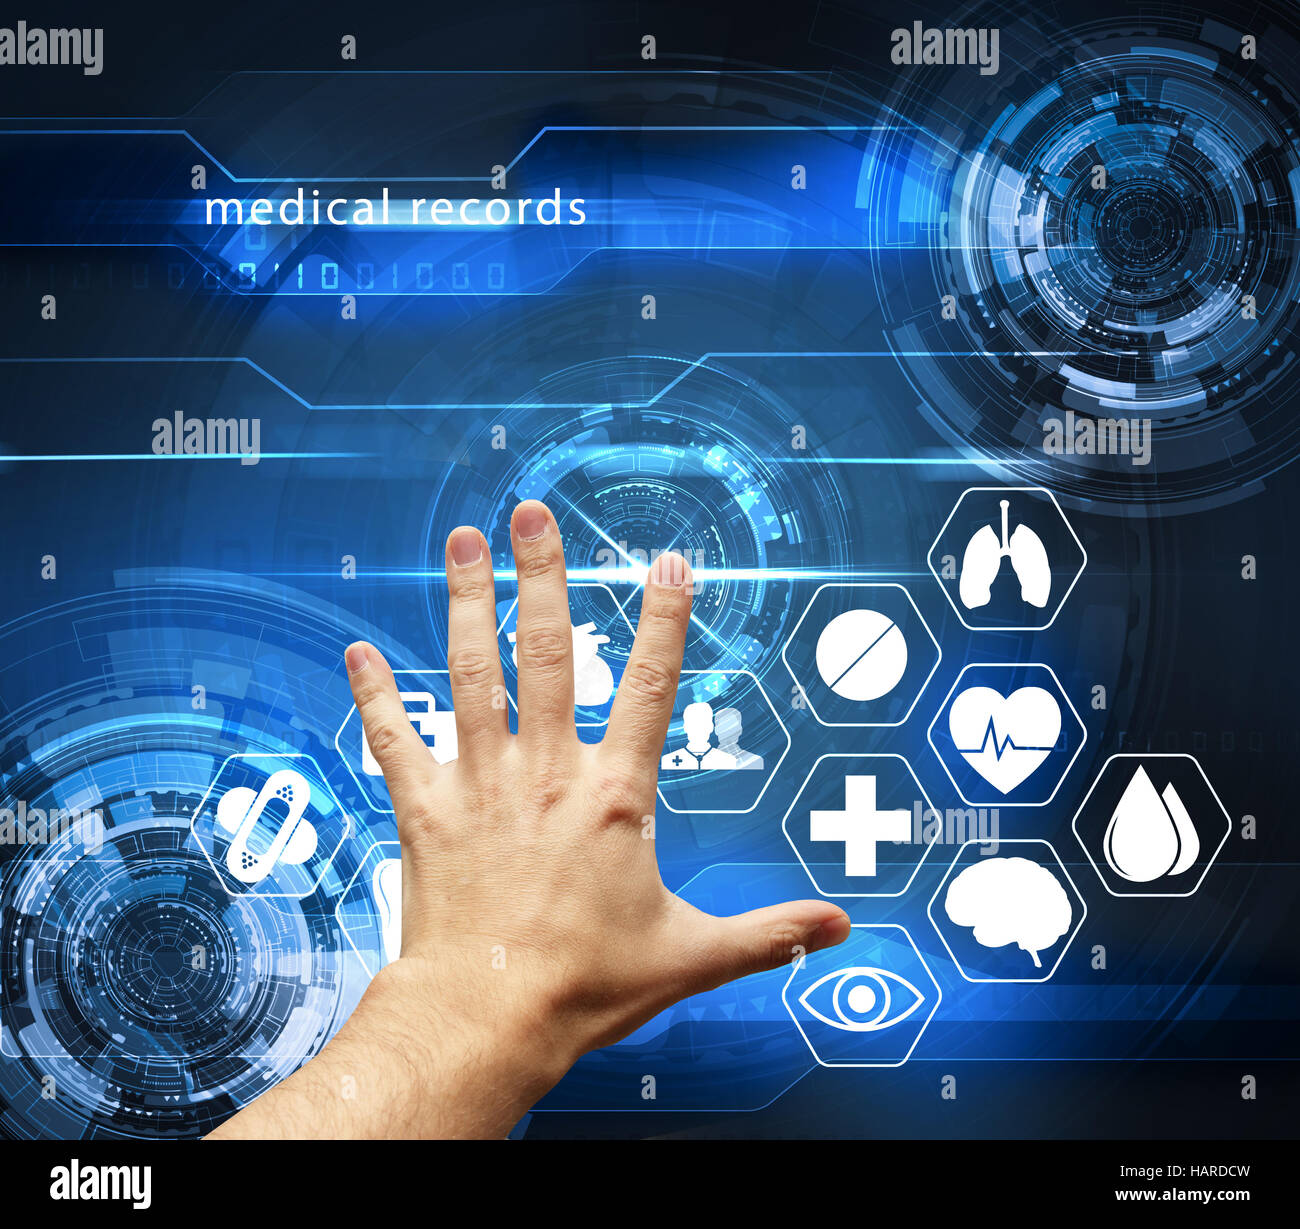 Mano toccando interfaccia futuristico con registrazioni medicali - medical health care concept Foto Stock